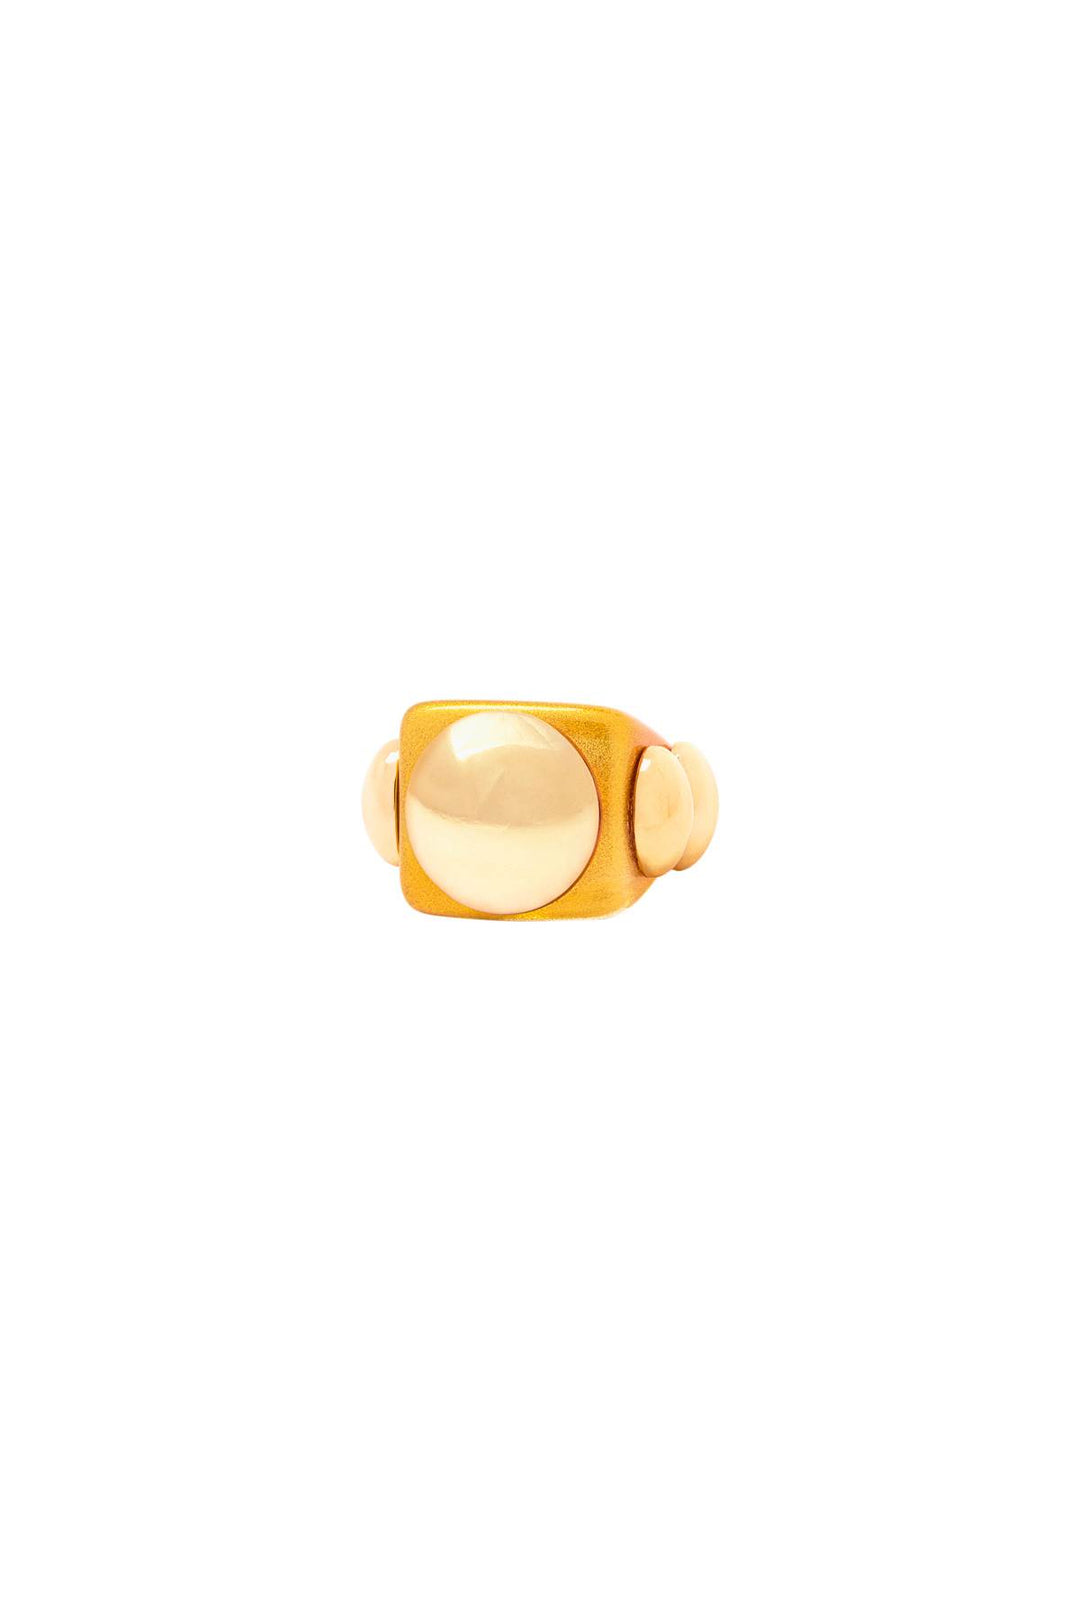 La manso 'oro puroi' ring-0